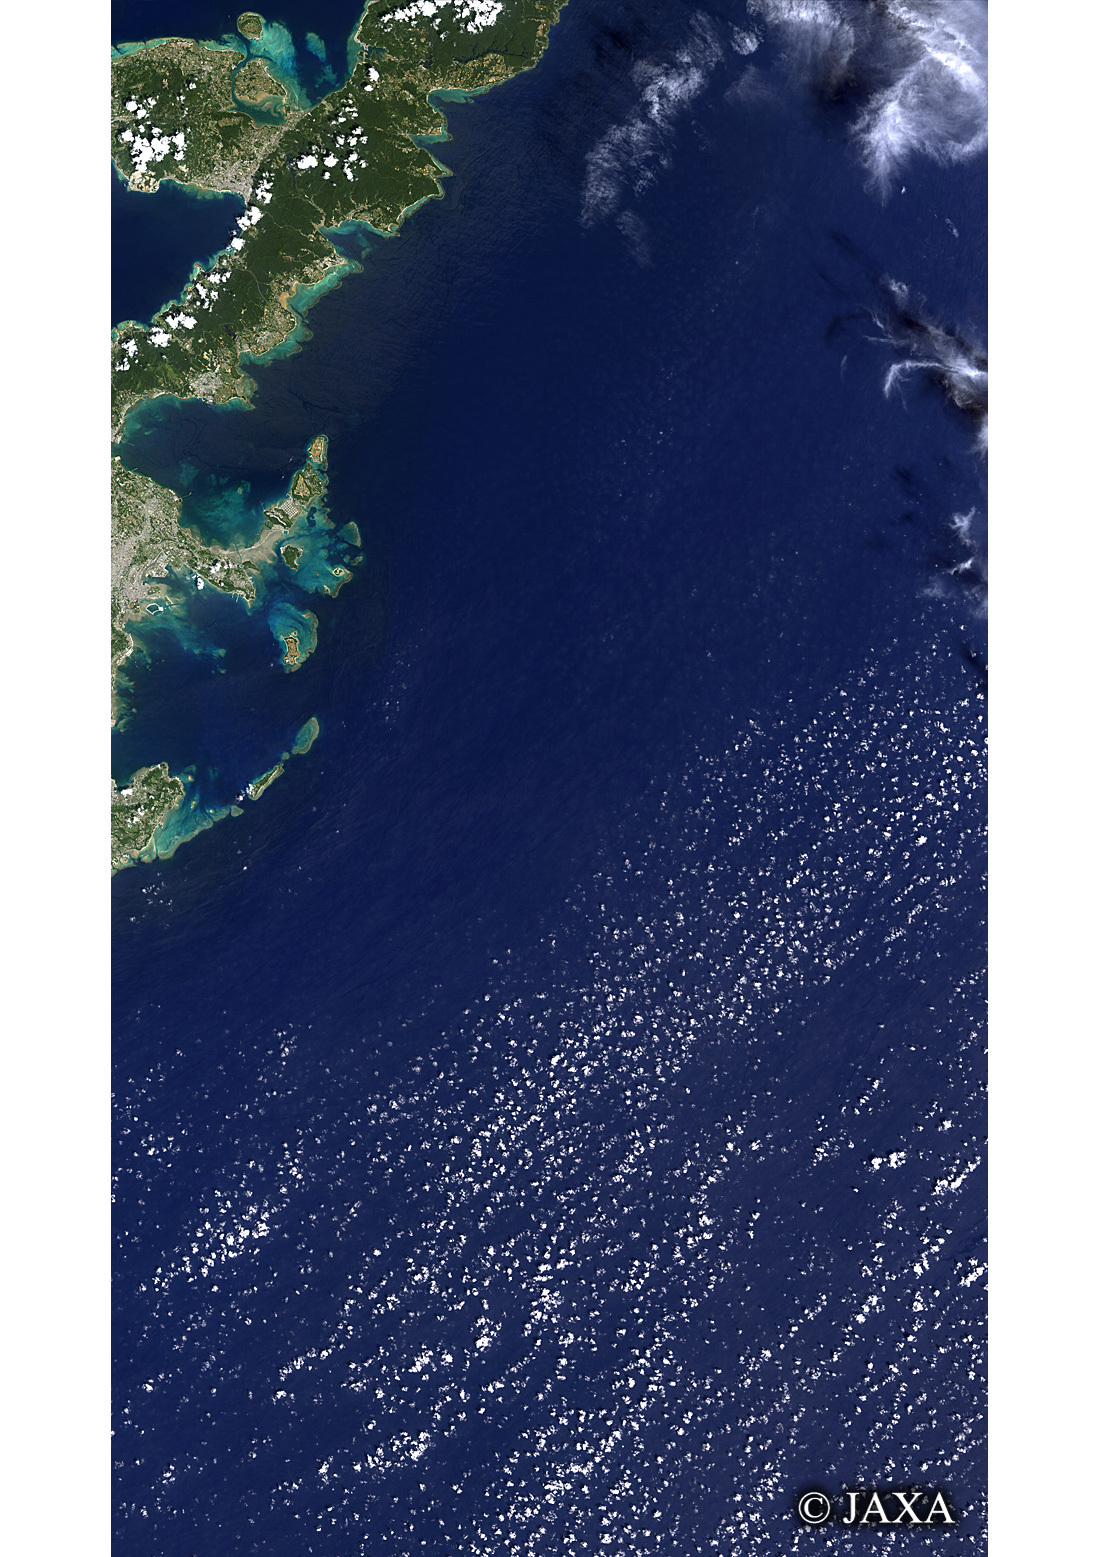 だいちから見た日本の都市 沖縄本島:衛星画像